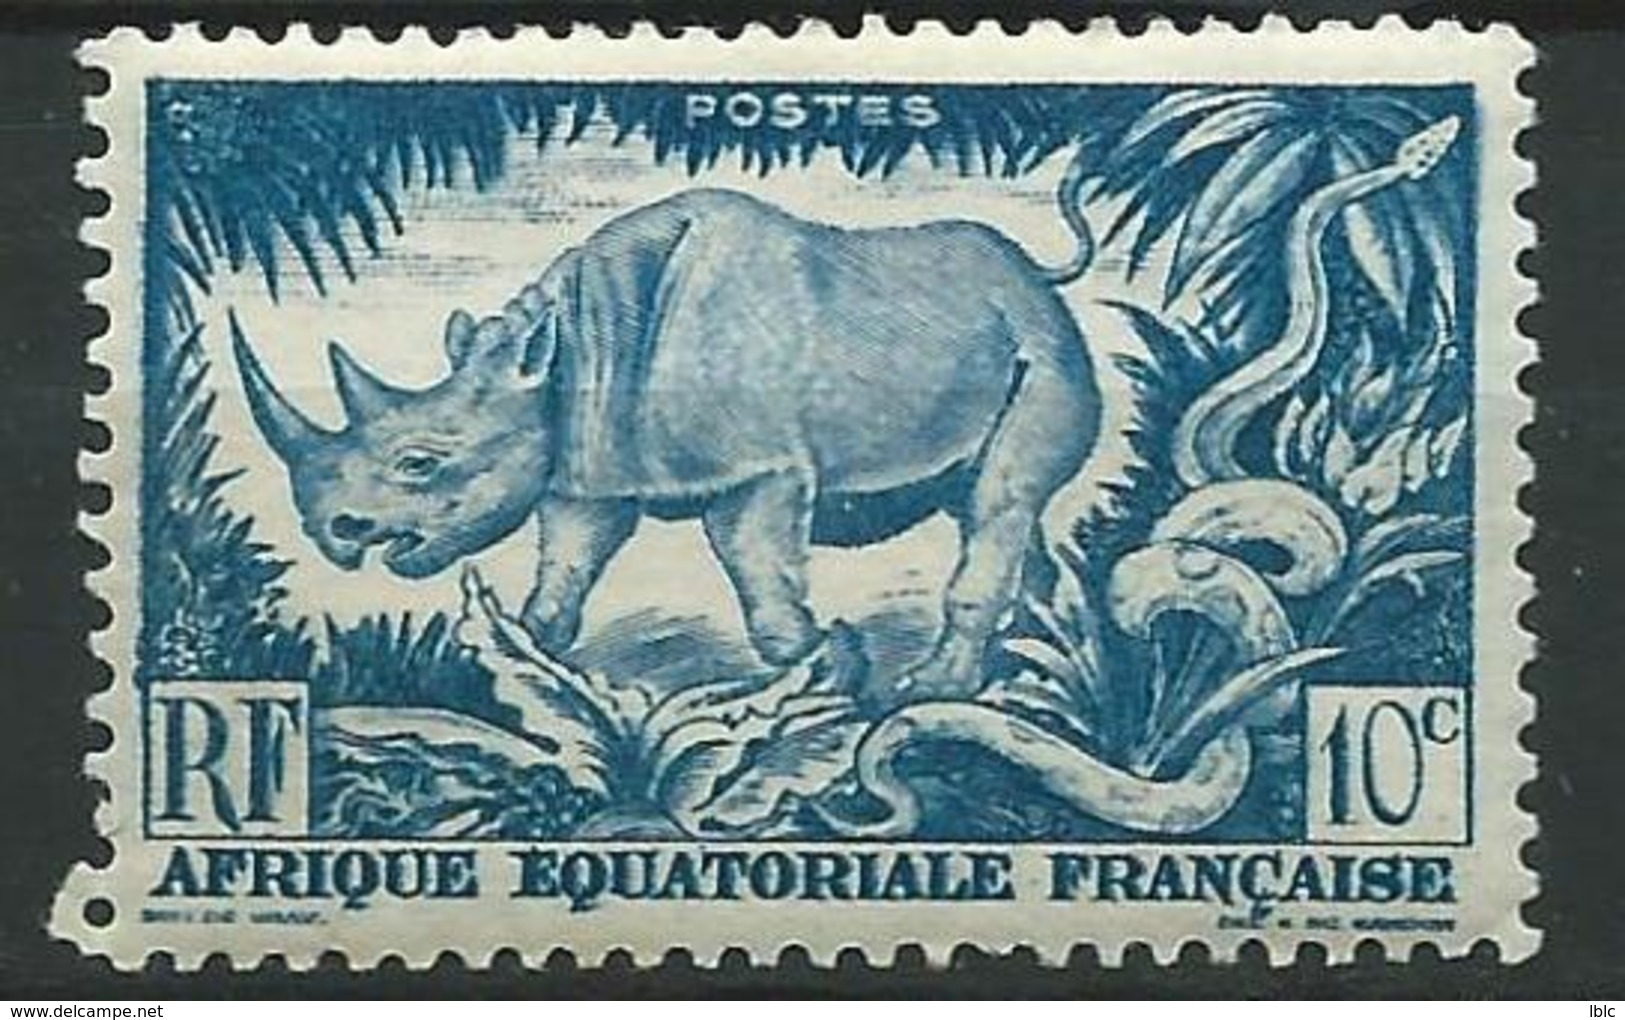 Afrique Equatoriale Française - Lot 27 timbres dont 2 semblables